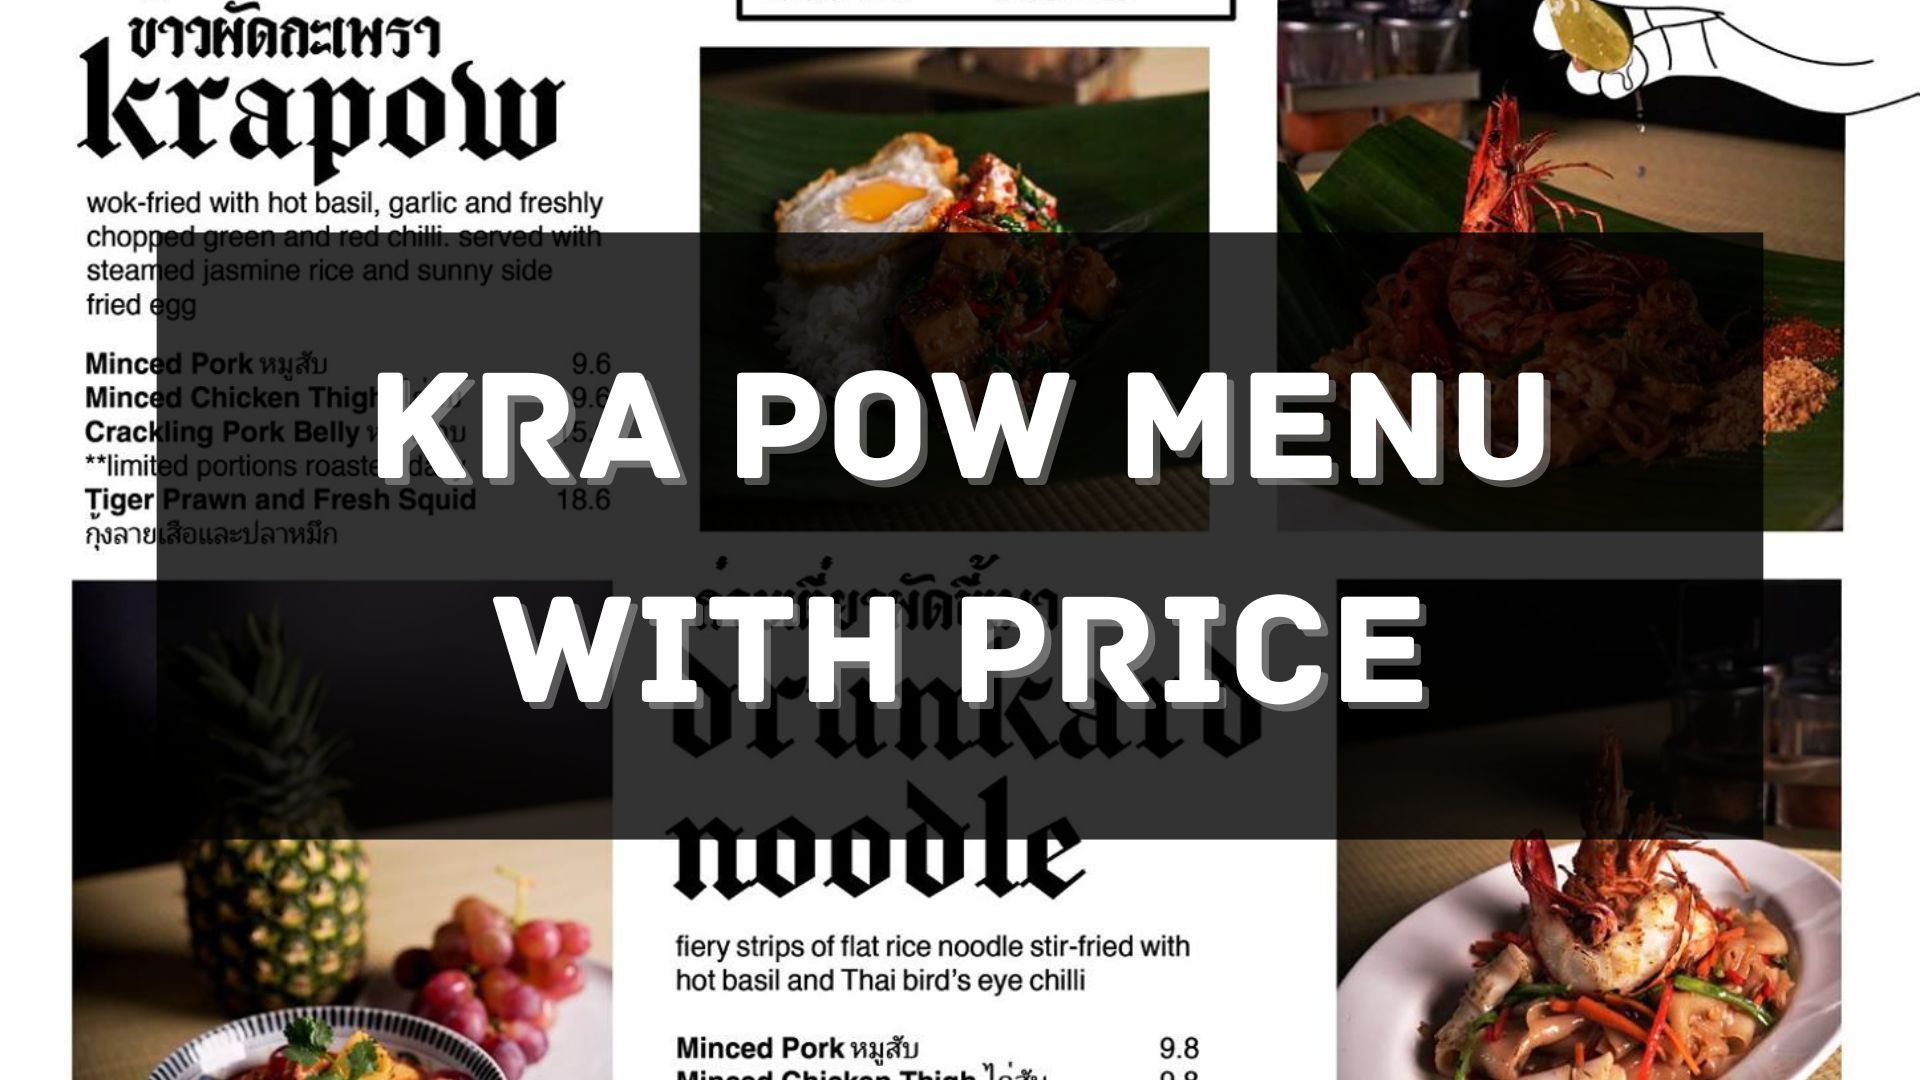 kra pow menu prices singapore